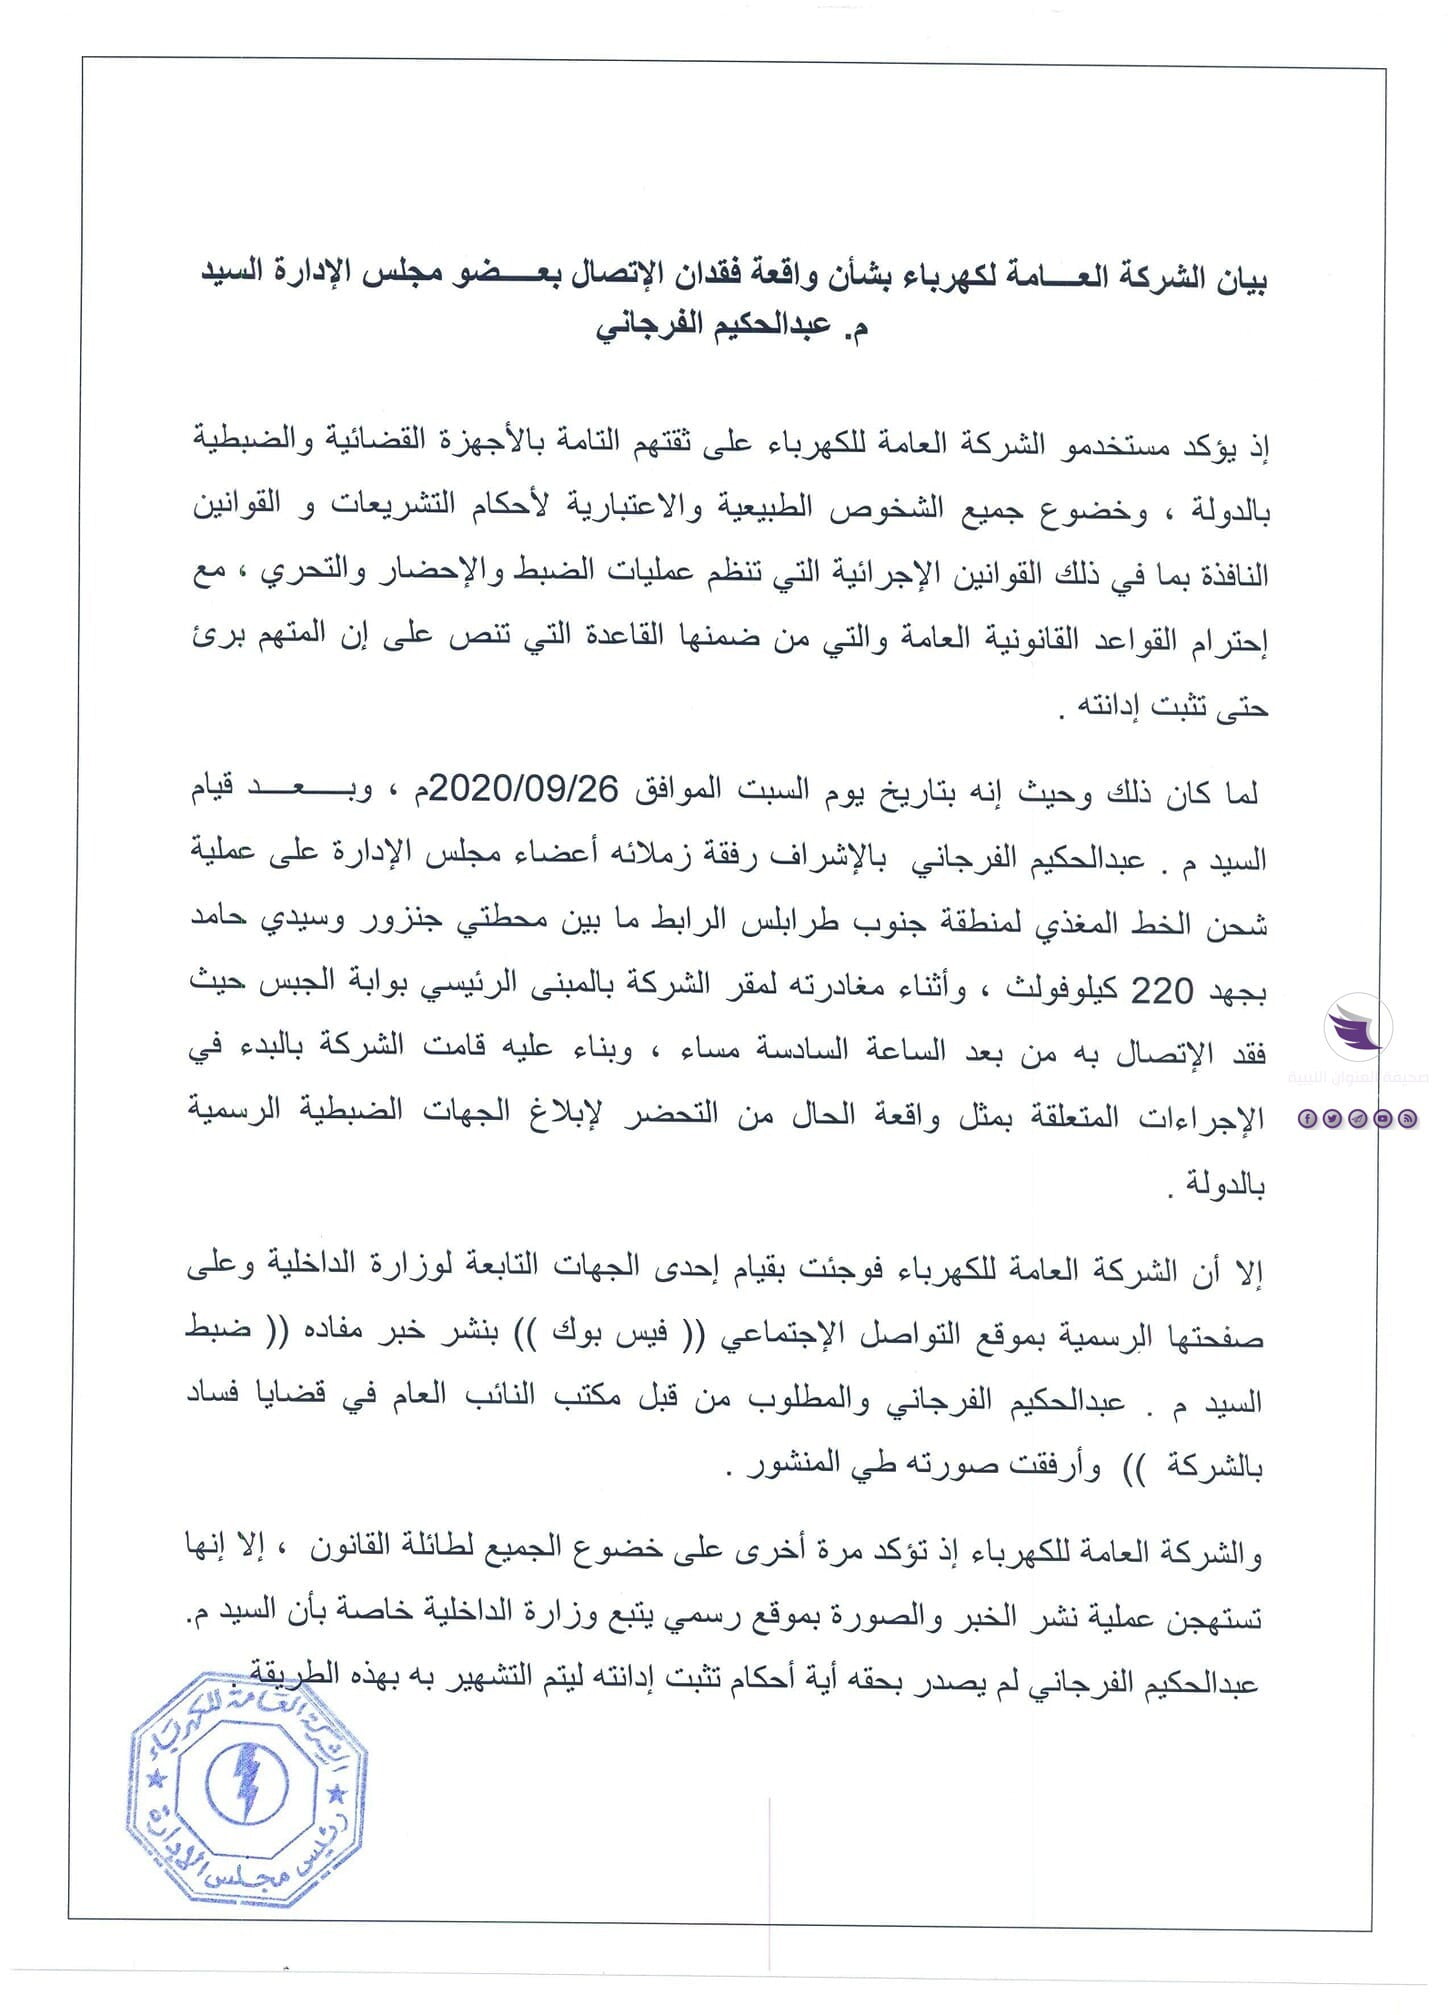 عقب ضبطه في قضايا فساد.. العامة للكهرباء تتهم داخلية الوفاق بالتشهير بعضو مجلس إدارتها - 120316334 1493736420814177 7895684081151826032 o